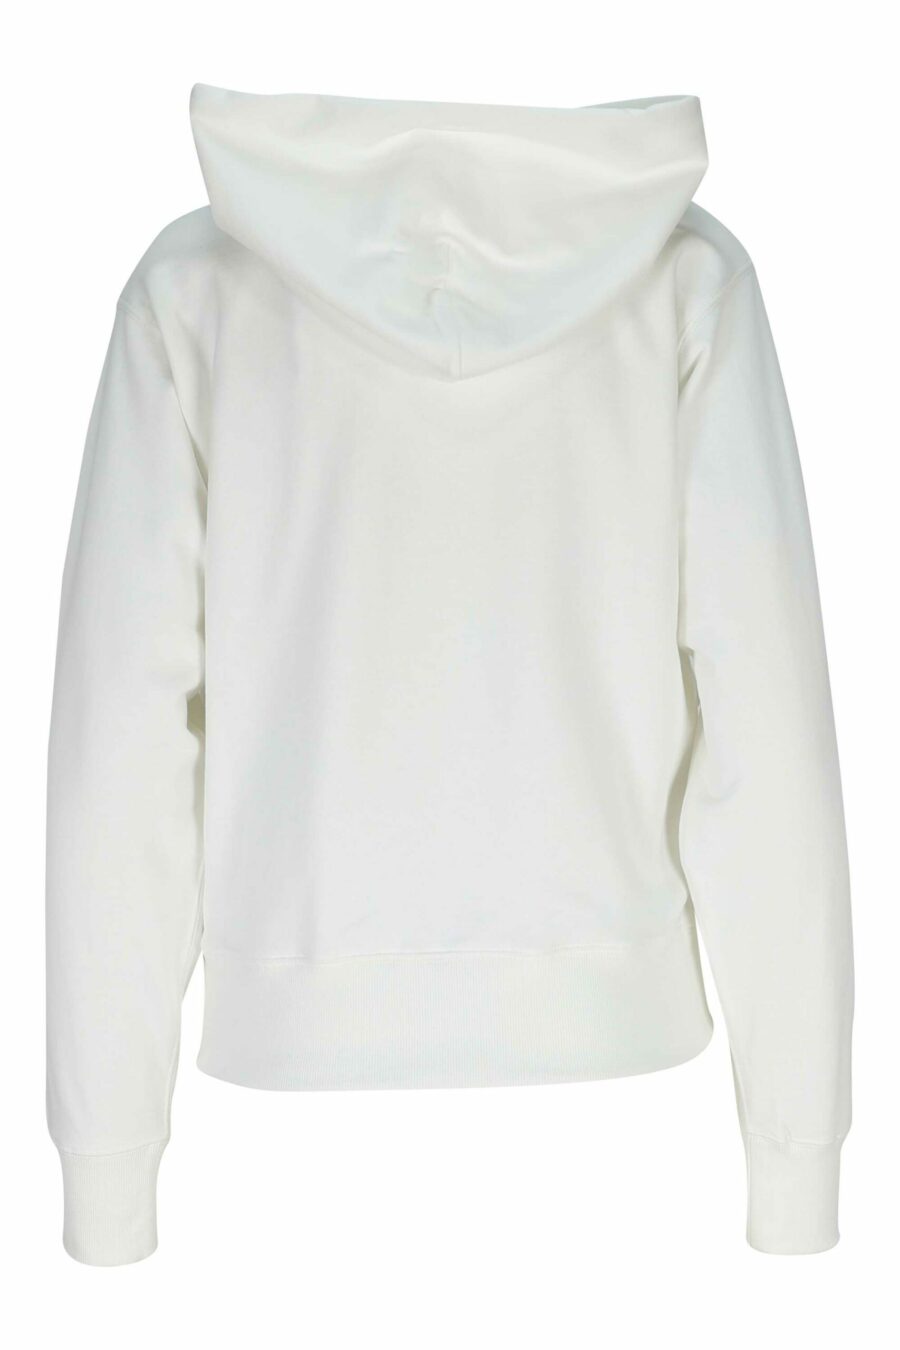 Sweat à capuche blanc avec mini logo "kenzo elephant" - 3612230619975 1 échelle